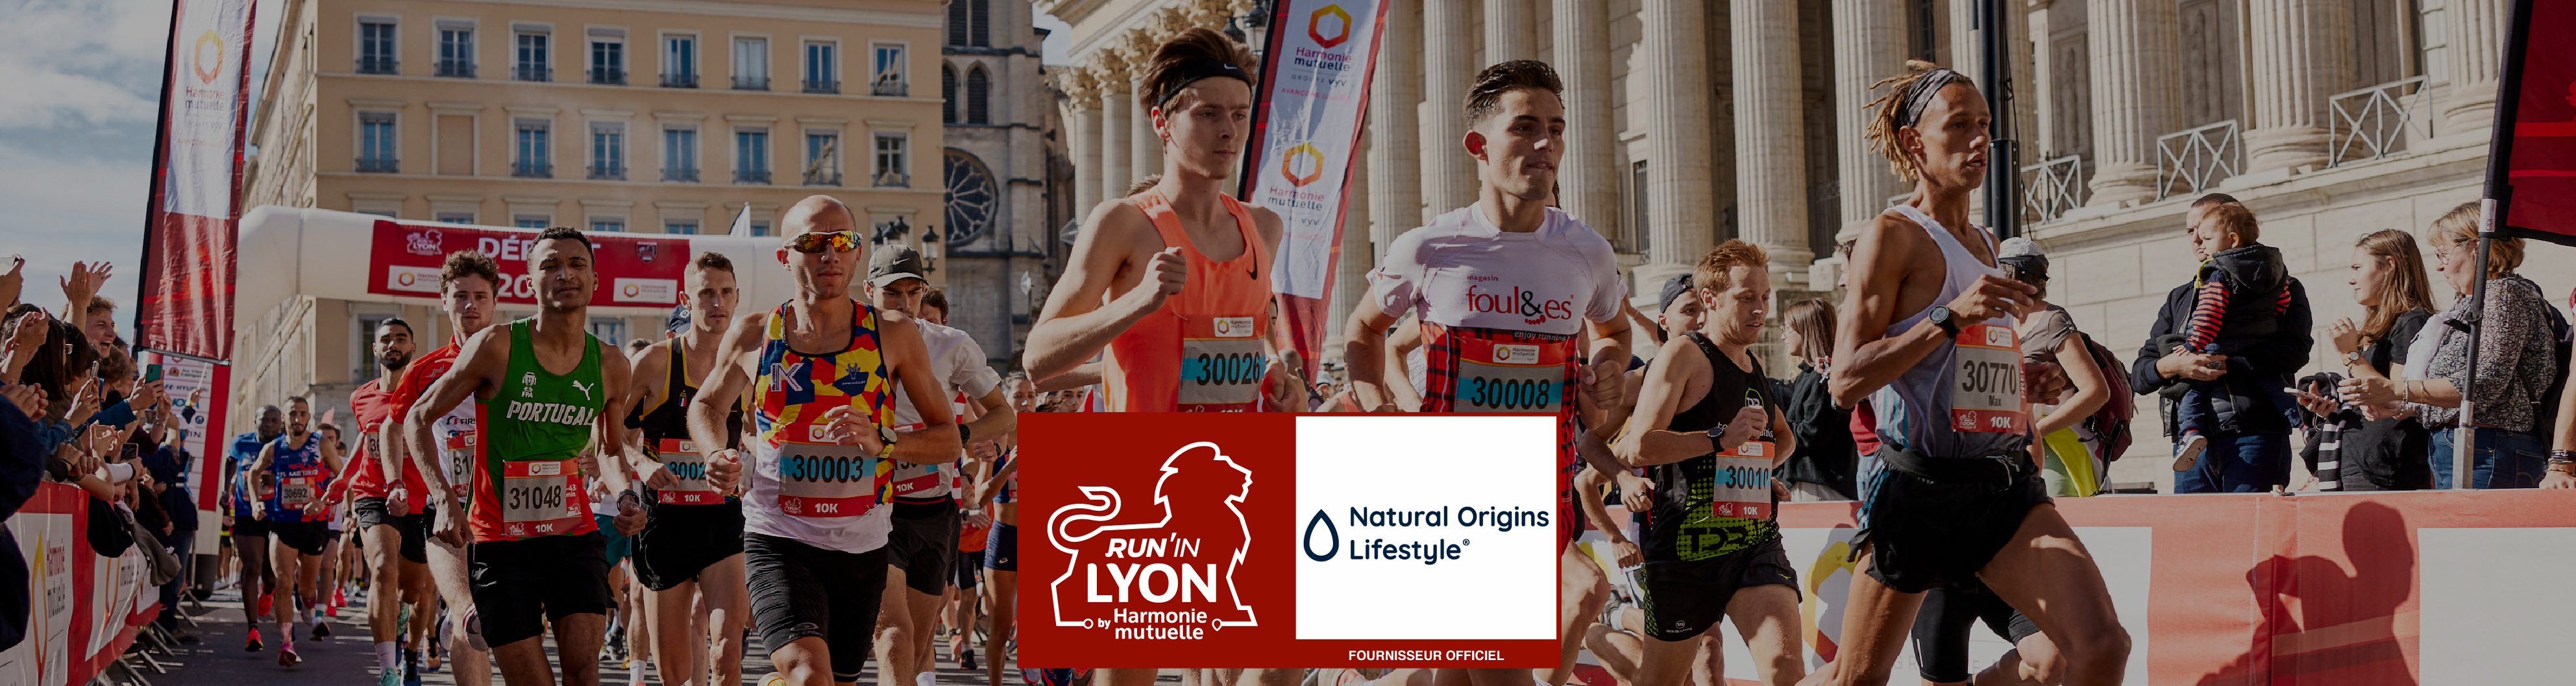 Natural Origins fournisseur officiel du Run In Lyon avec une gamme Lifestyle dédiée à la Nutrition Sportive